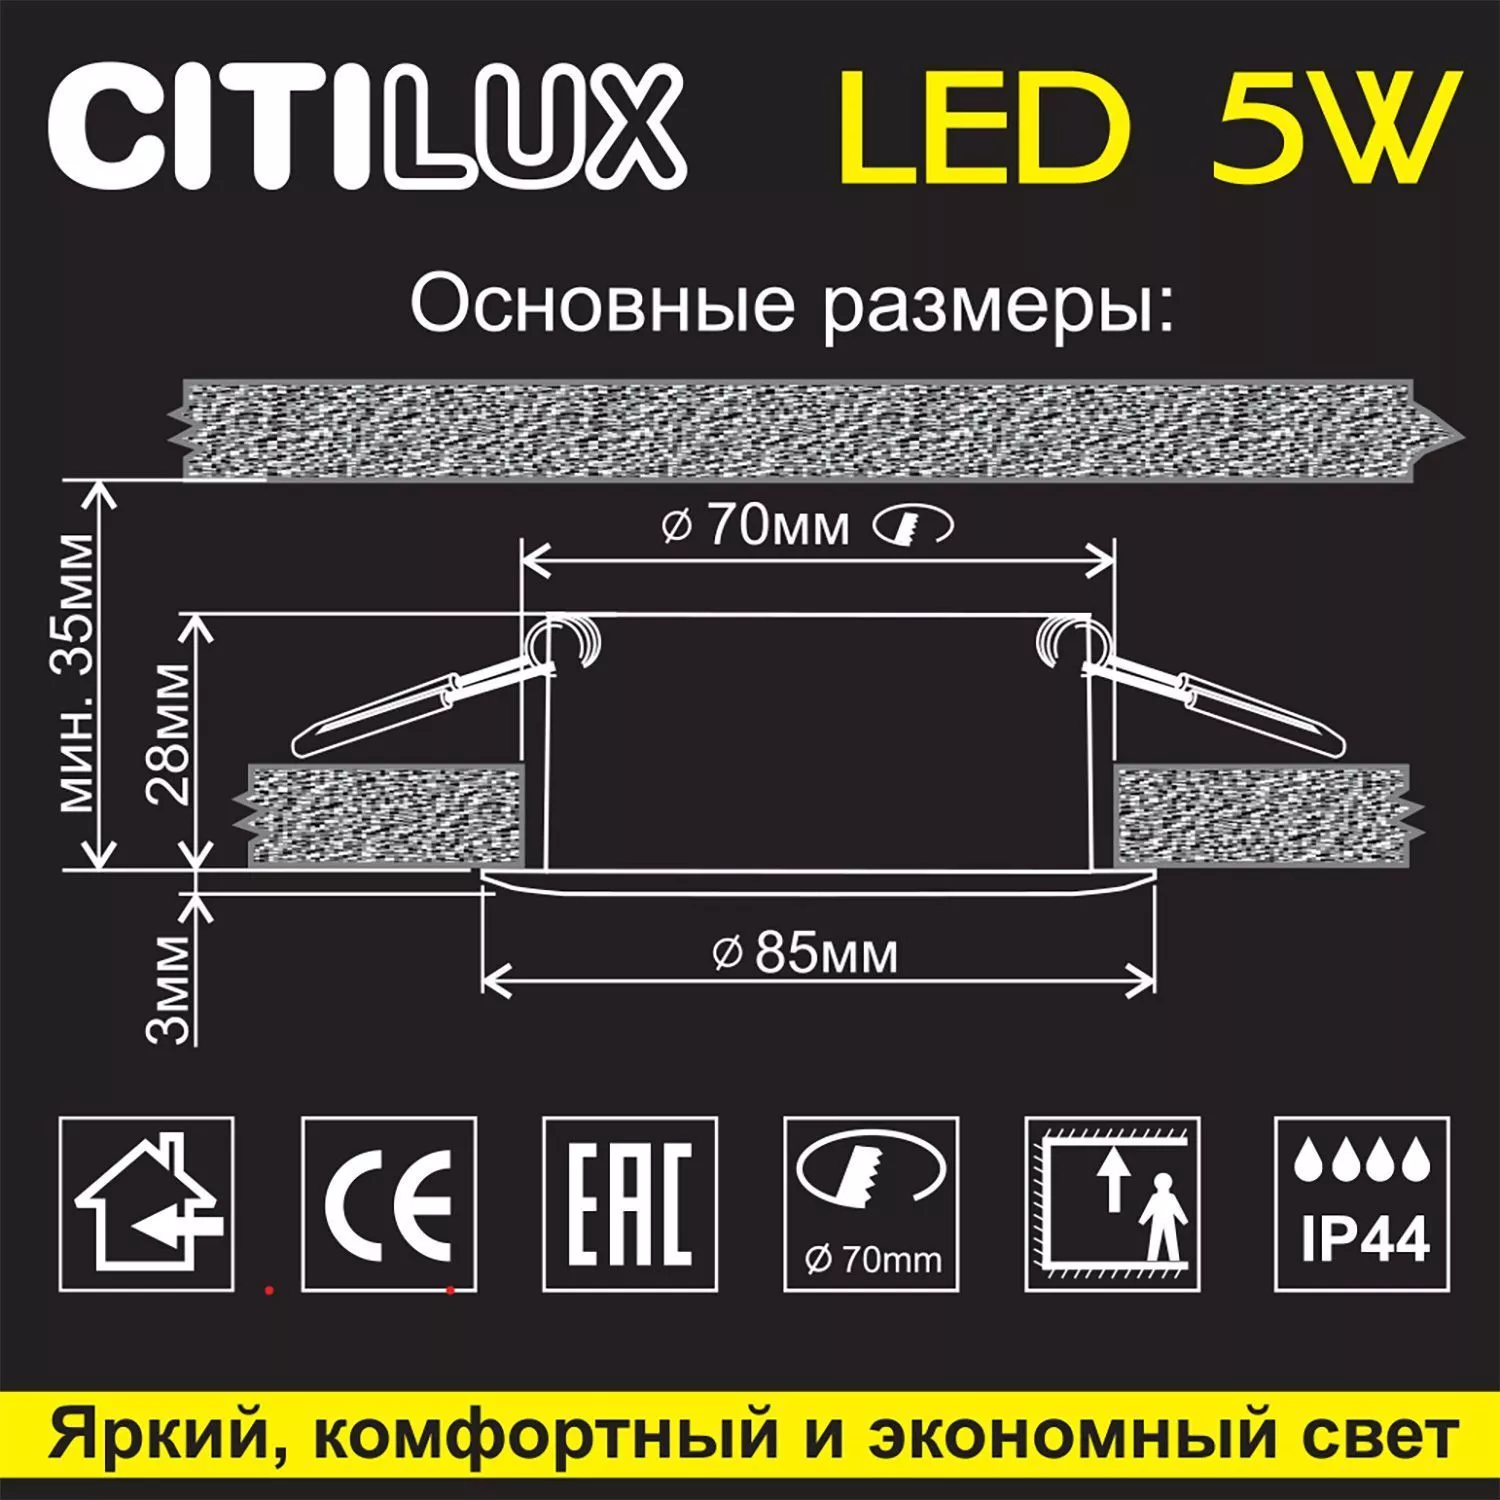 Встраиваемый светильник Citilux Акви CLD008011